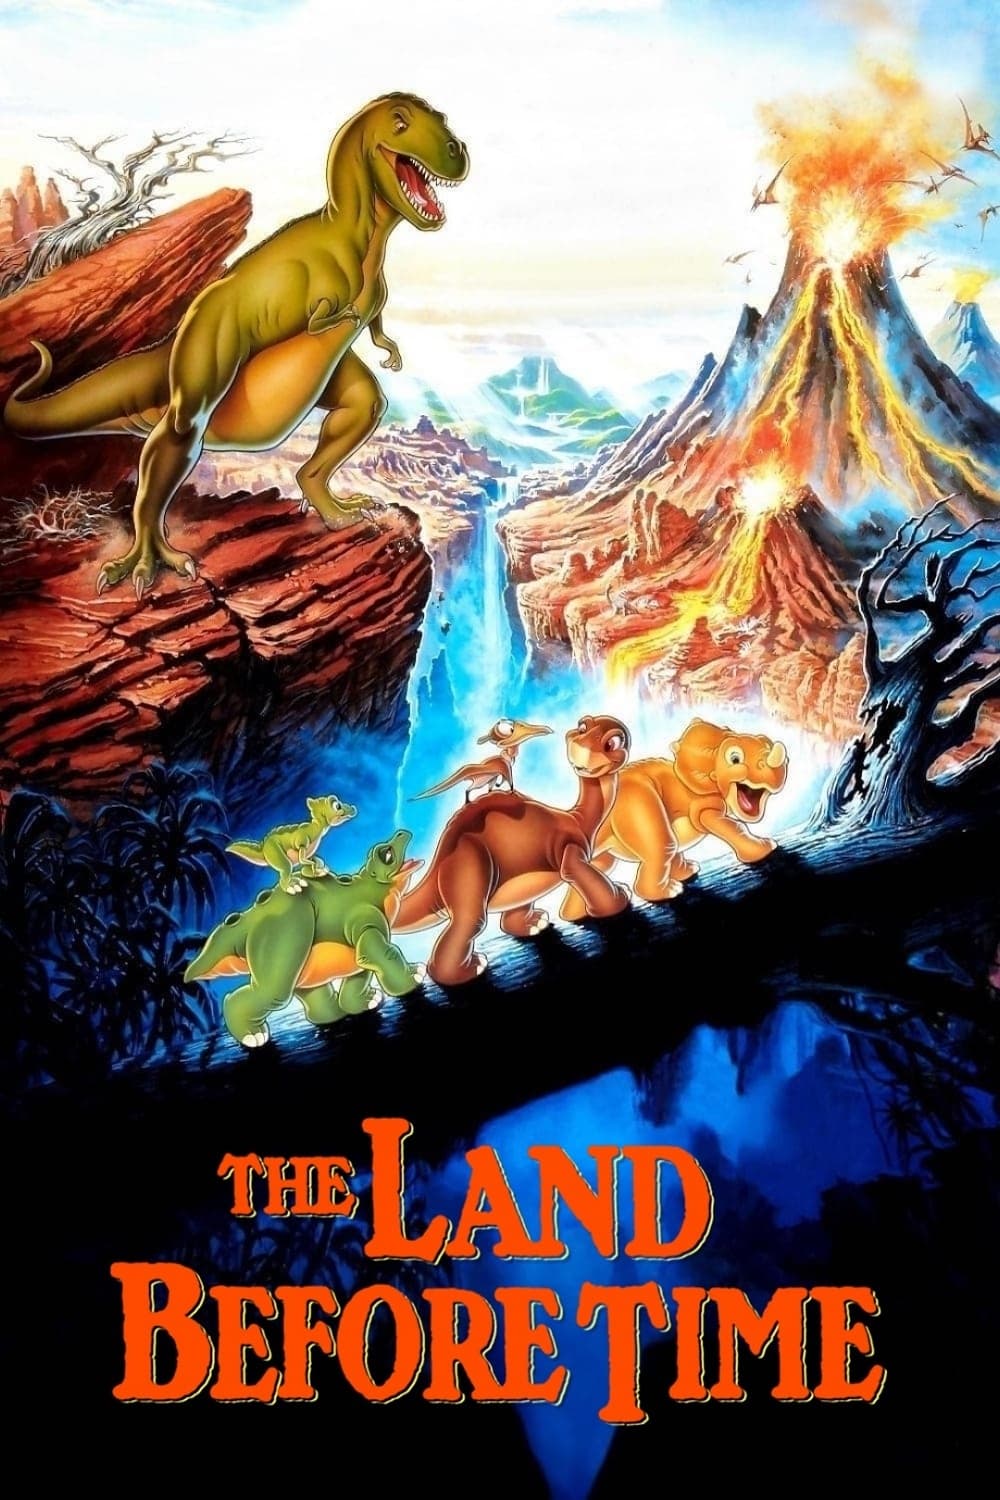 Le Petit dinosaure et la vallée des merveilles (1988)